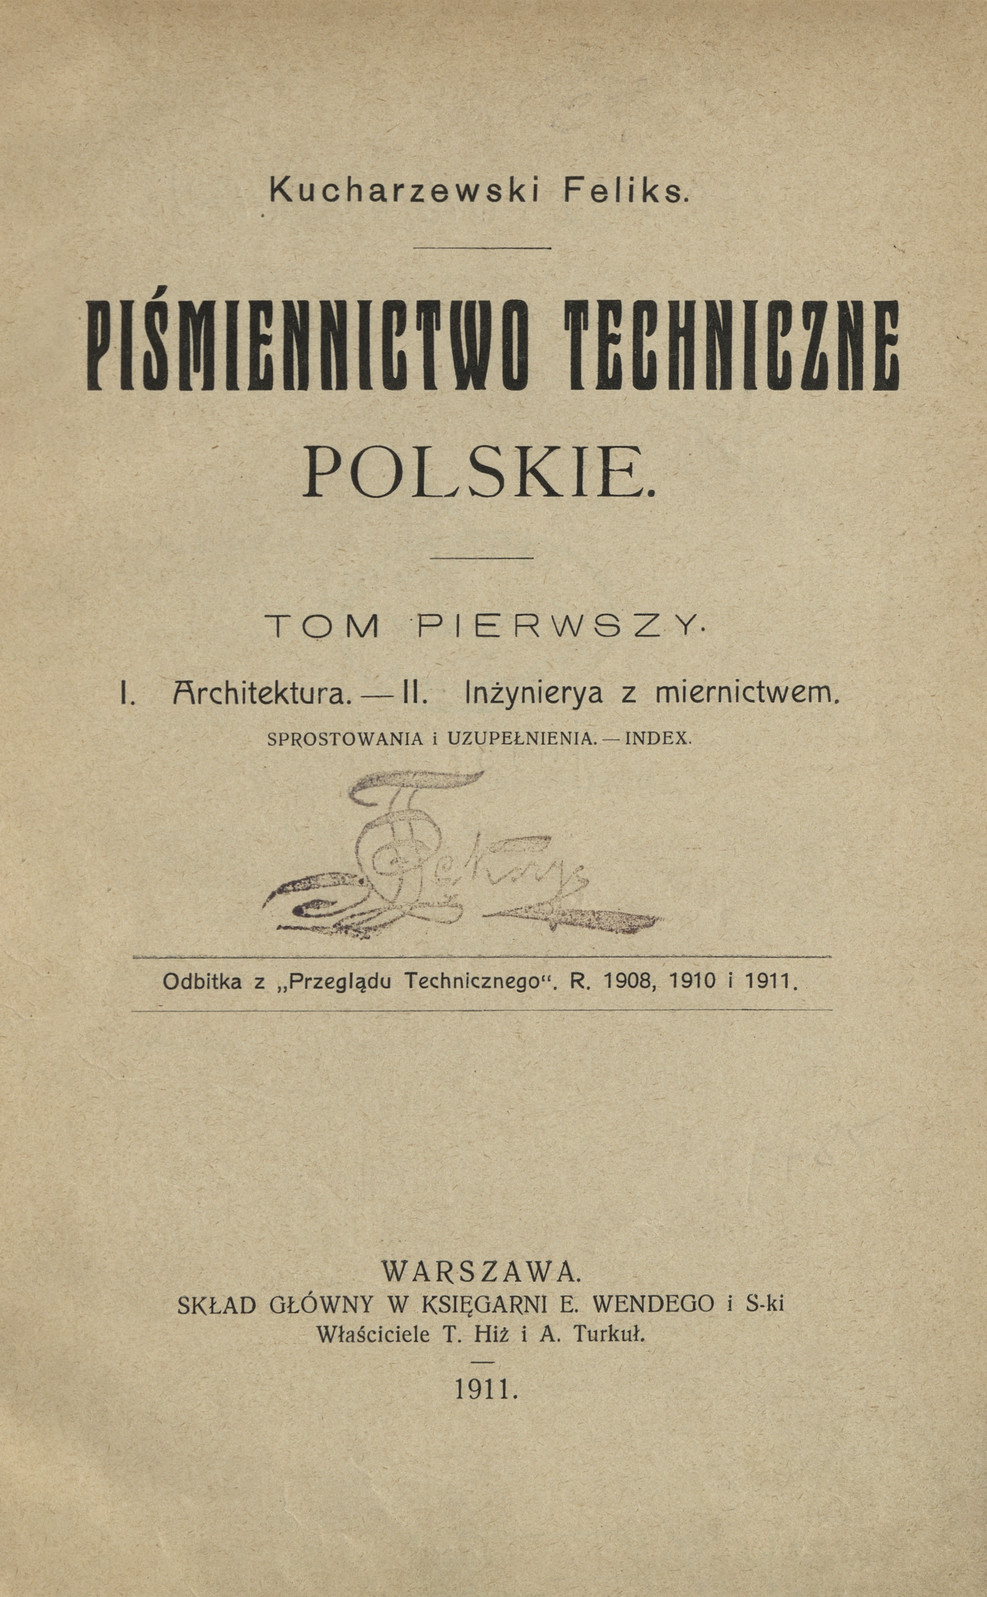 Piśmiennictwo techniczne polskie : sprostowania i uzupełnienia : index. T. 1. 1, Architektura. 2, Inżynierya z miernictwem